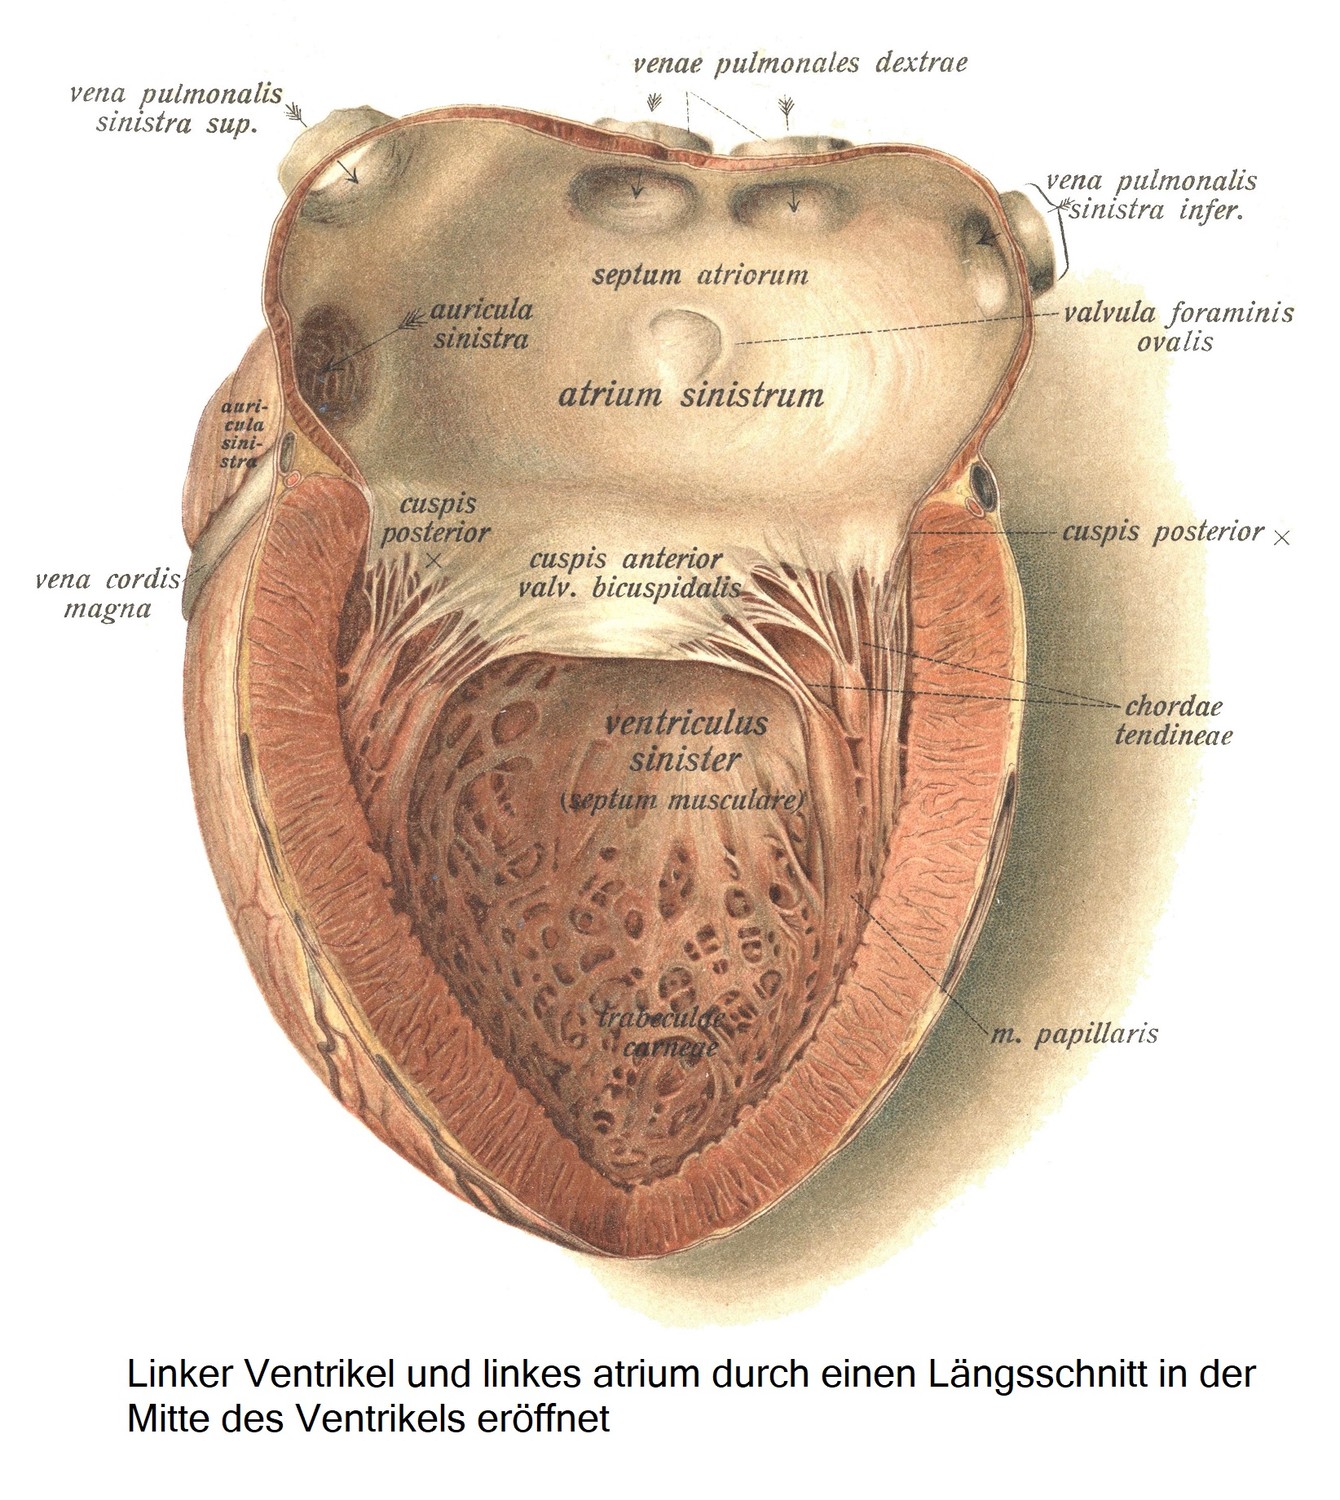 Левый желудочек и левое предсердие, вскрытые продольным разрезом посередине желудочка.